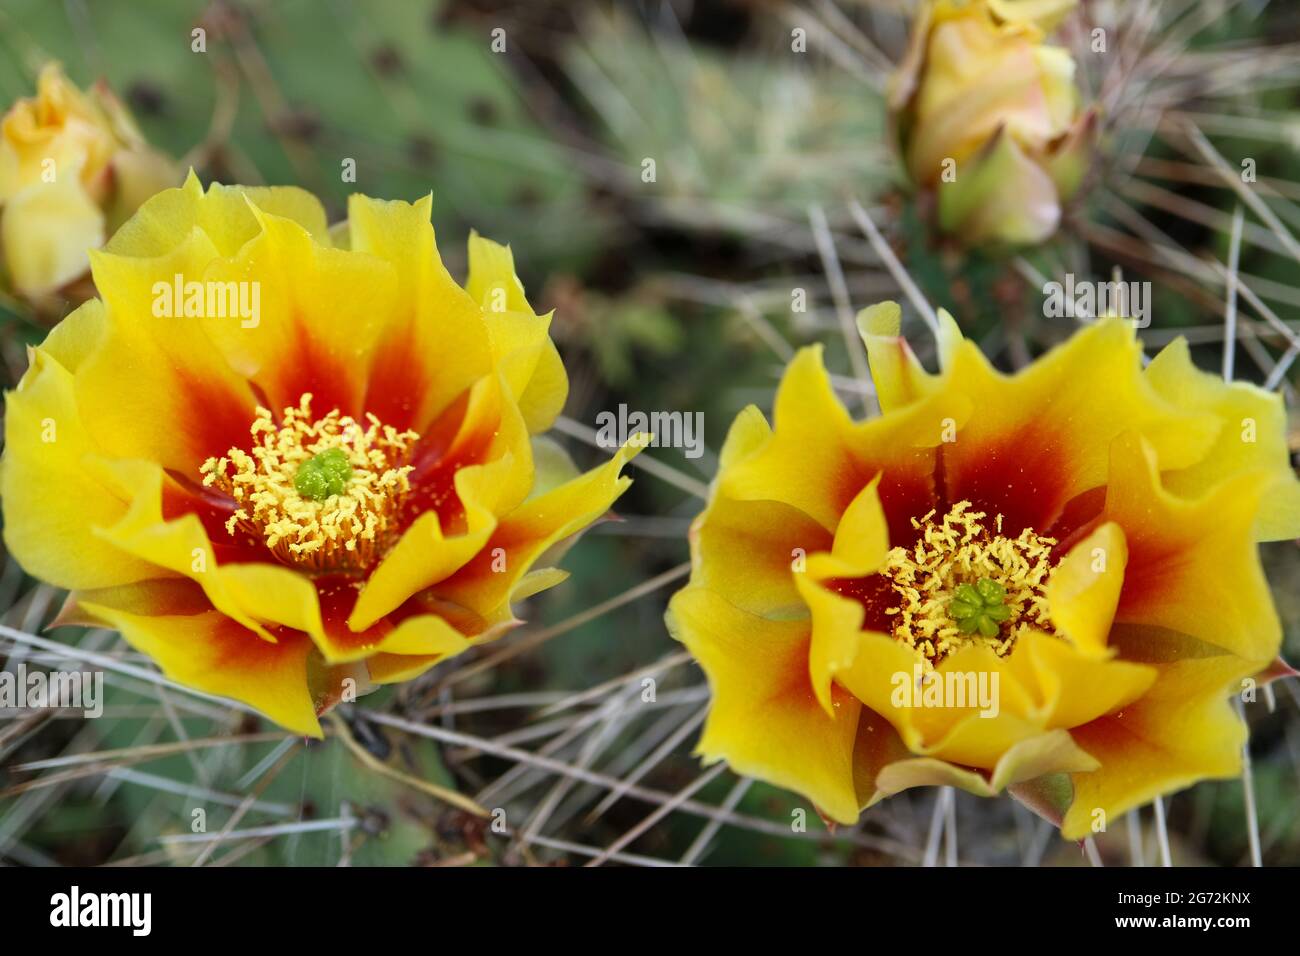 Fiore Cactus con petali e boccioli delicati, fiore di cactus con petali gialli - rossi e stami bianchi, cactus con spine, bellezza nella natura, floreale Foto Stock